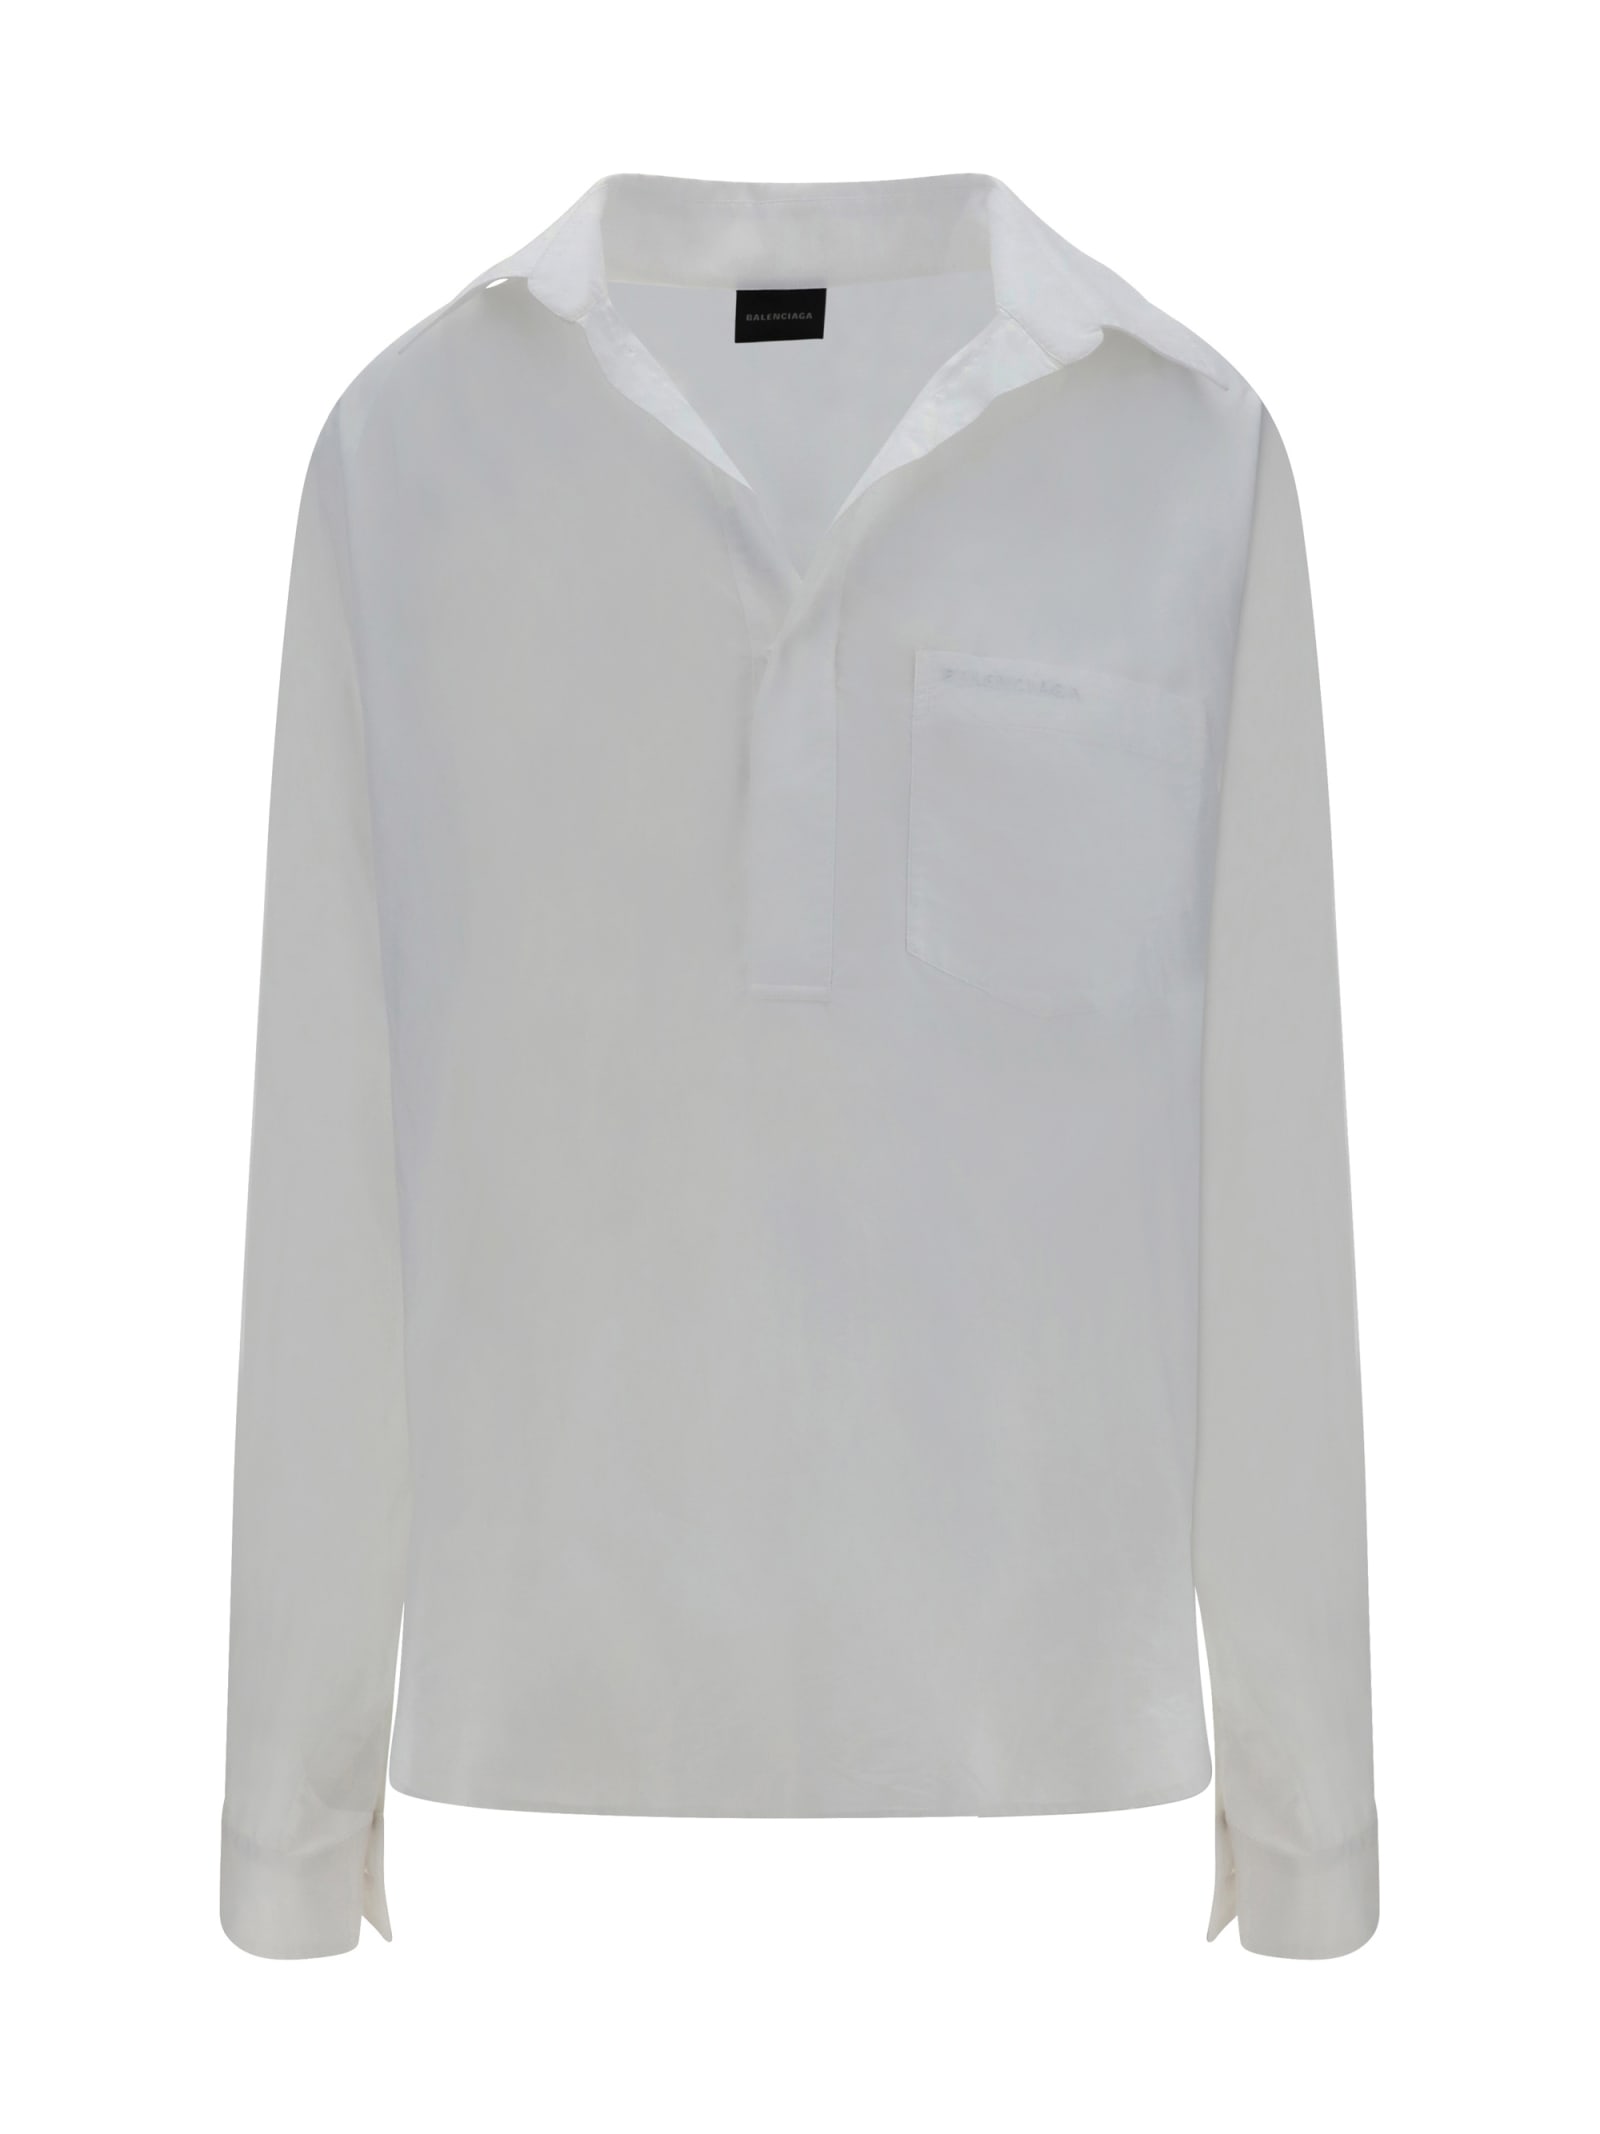 Shop Balenciaga Vareuse Shirt In White